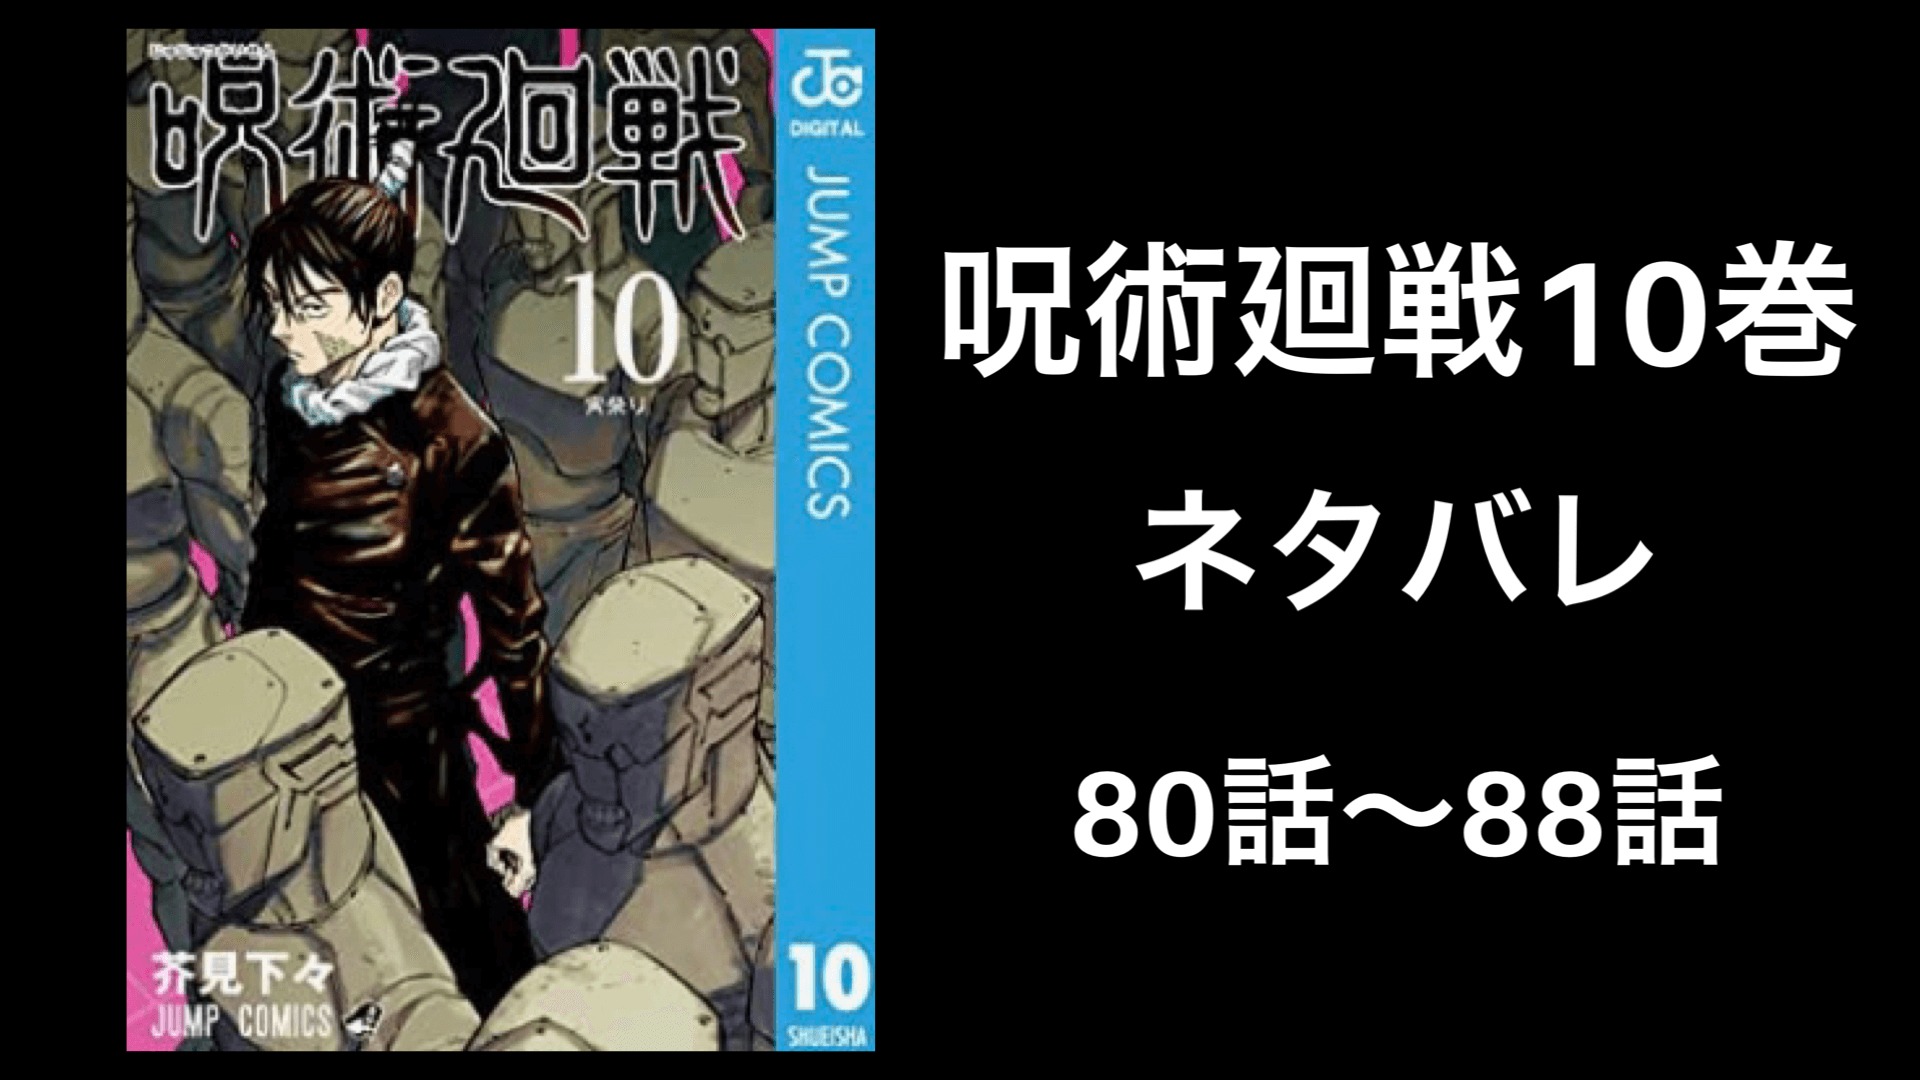 呪術廻戦10巻ネタバレ 無料で80話から話を徹底解説 完全版 しゅみかつ